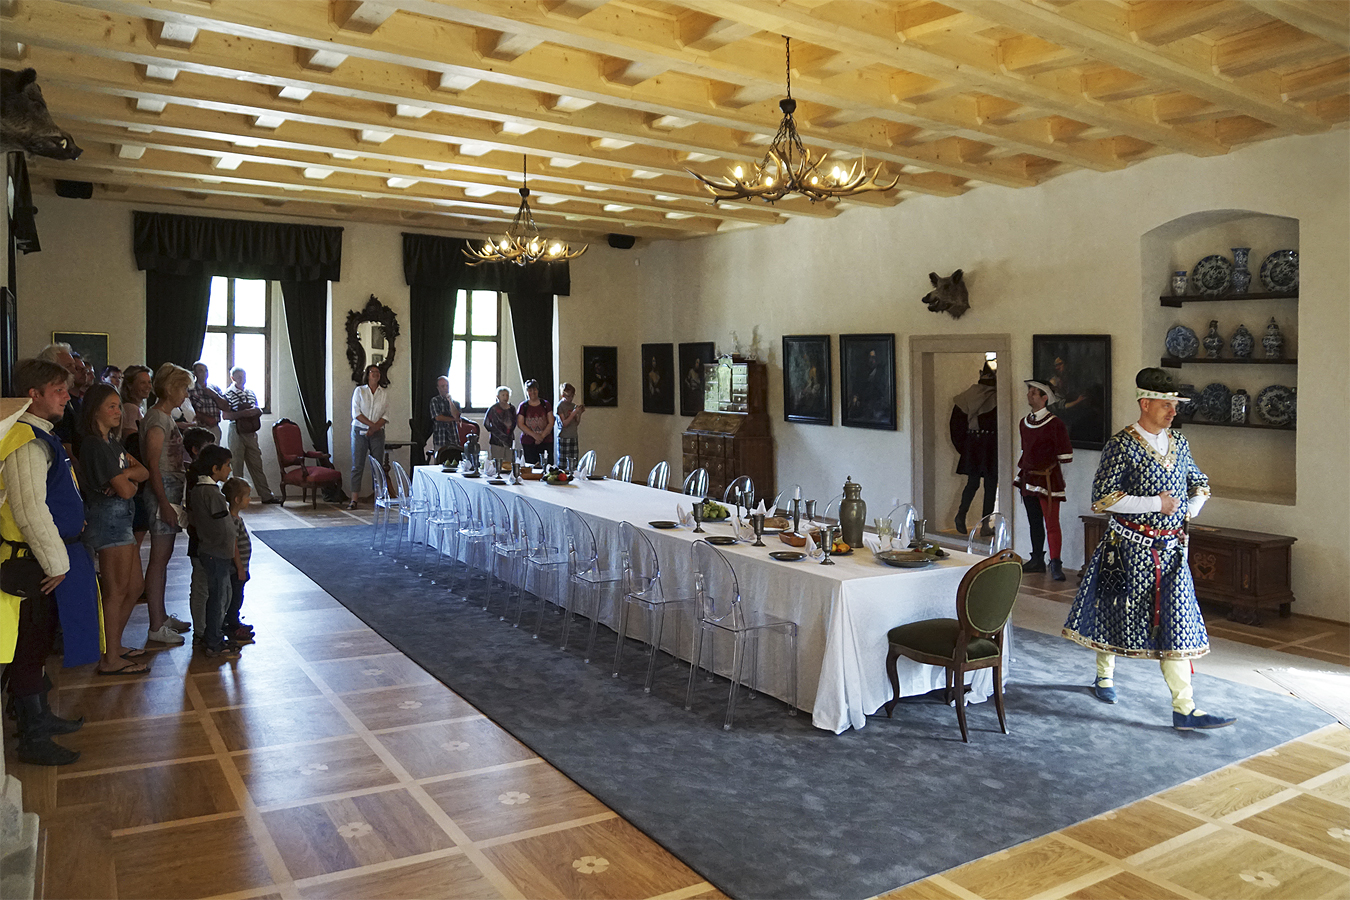 Hrad Roštejn - v hodovní síni aktéři v historických kostýmech přibližují návštěvníkům hradu dobovou atmosféru